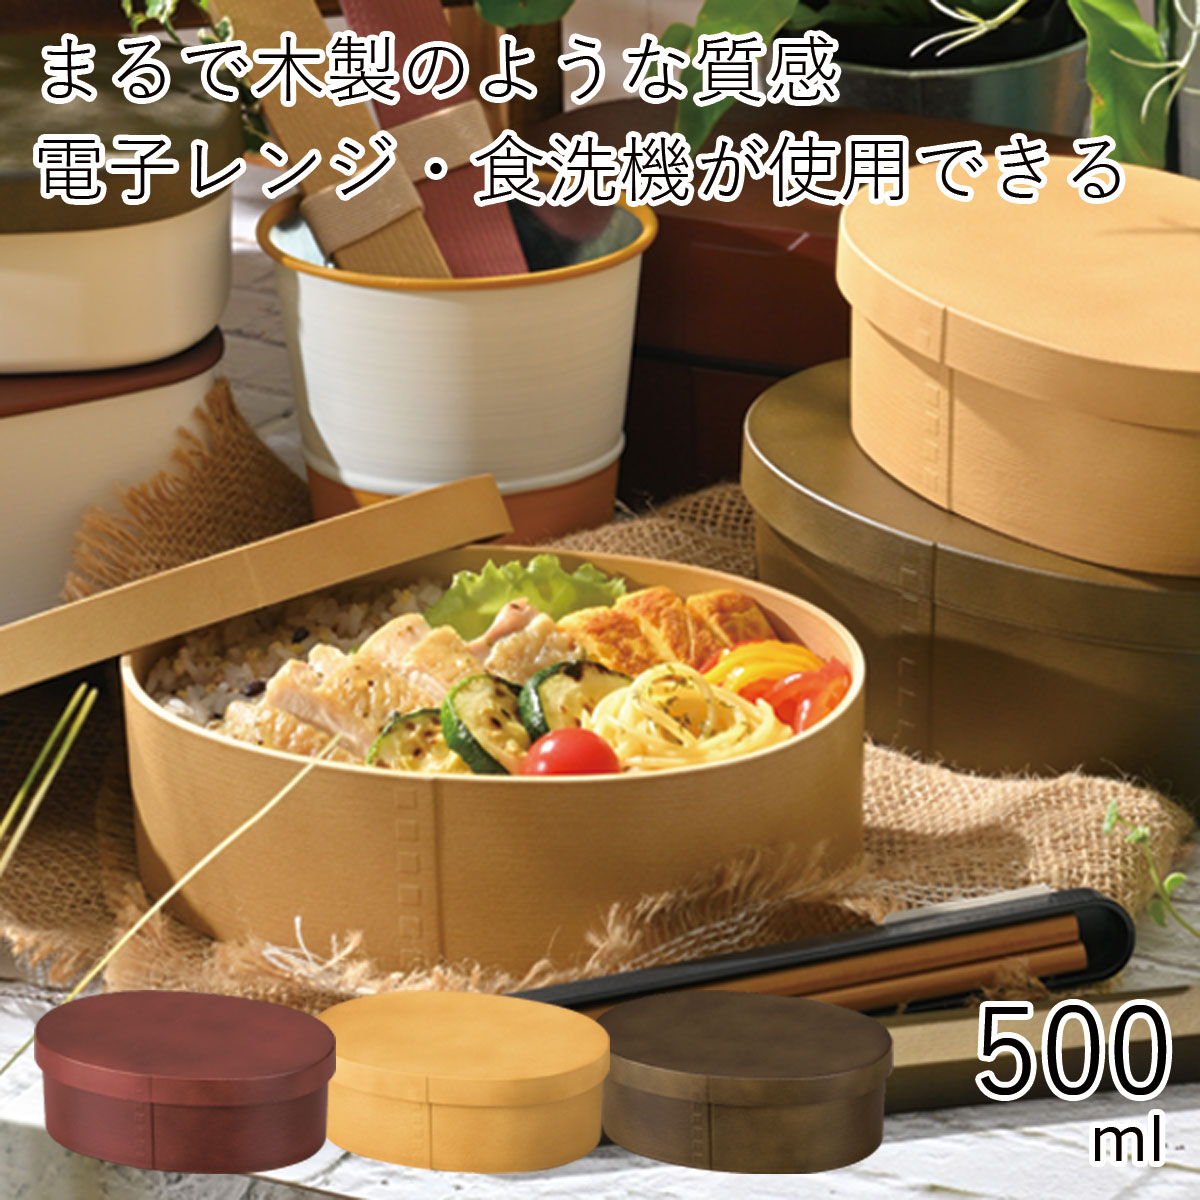 弁当箱”HAKOYA 曲げわっぱ一段弁当 小 500ml”Garden ガーデン日本製1段 お弁当箱 おしゃれ LUNCH BOX